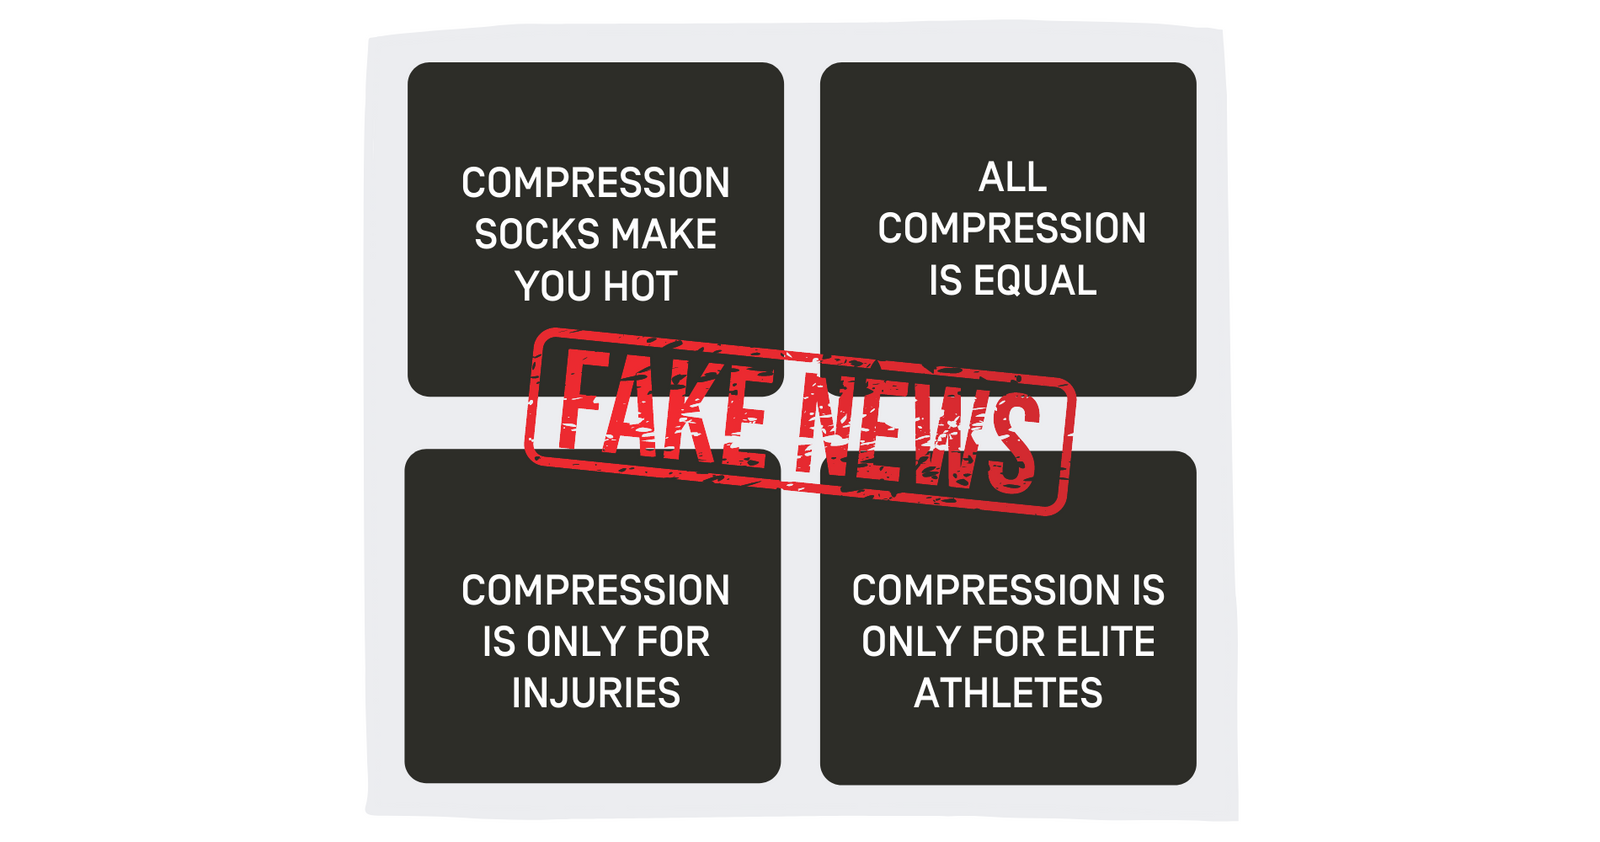 Compression Myths Debunked – CEP Compression